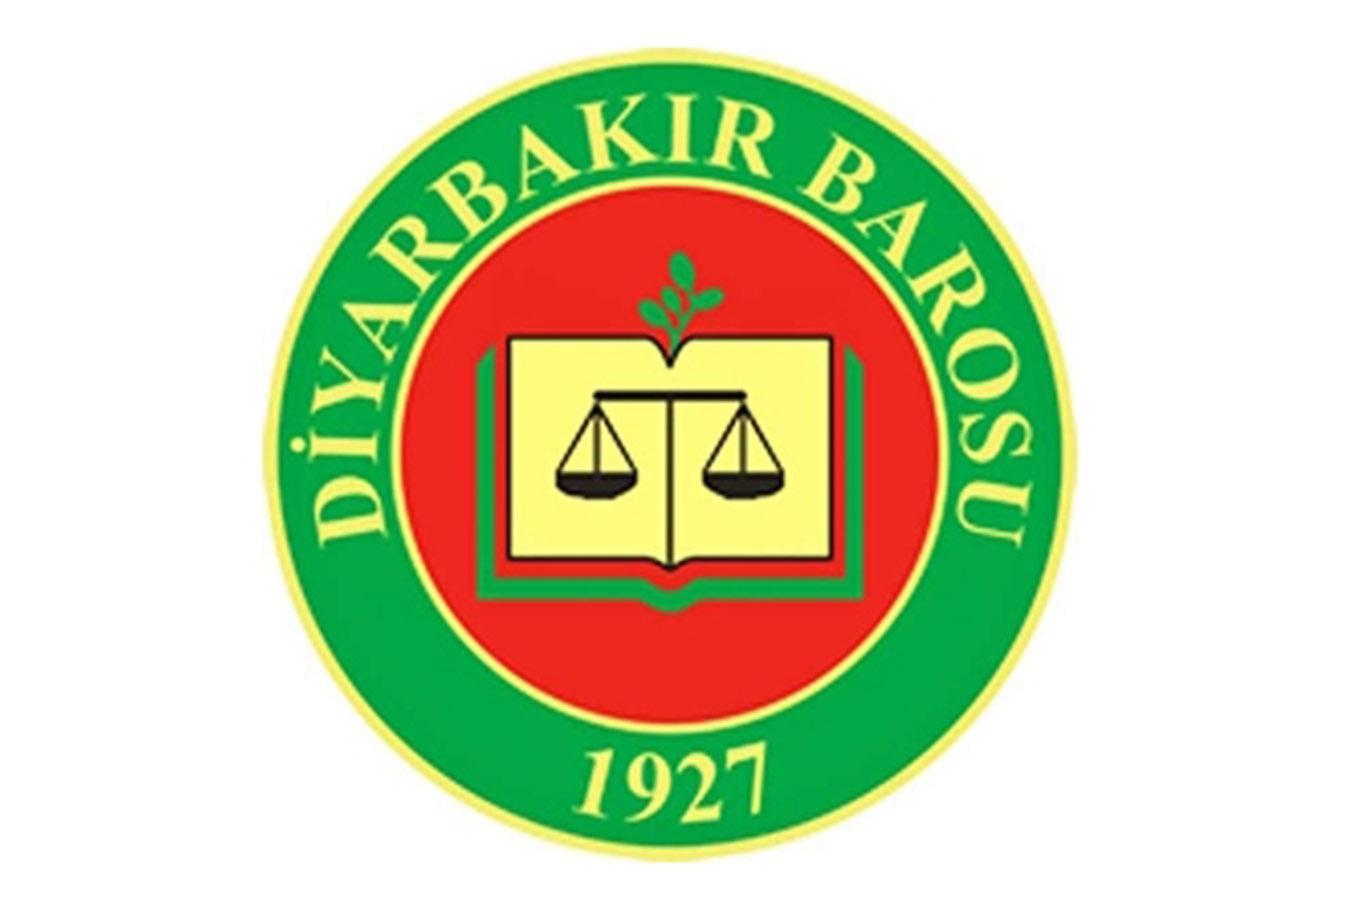 62 avukat ortak bildiriyle Diyarbakır Barosu’nun açıklamasını reddetti